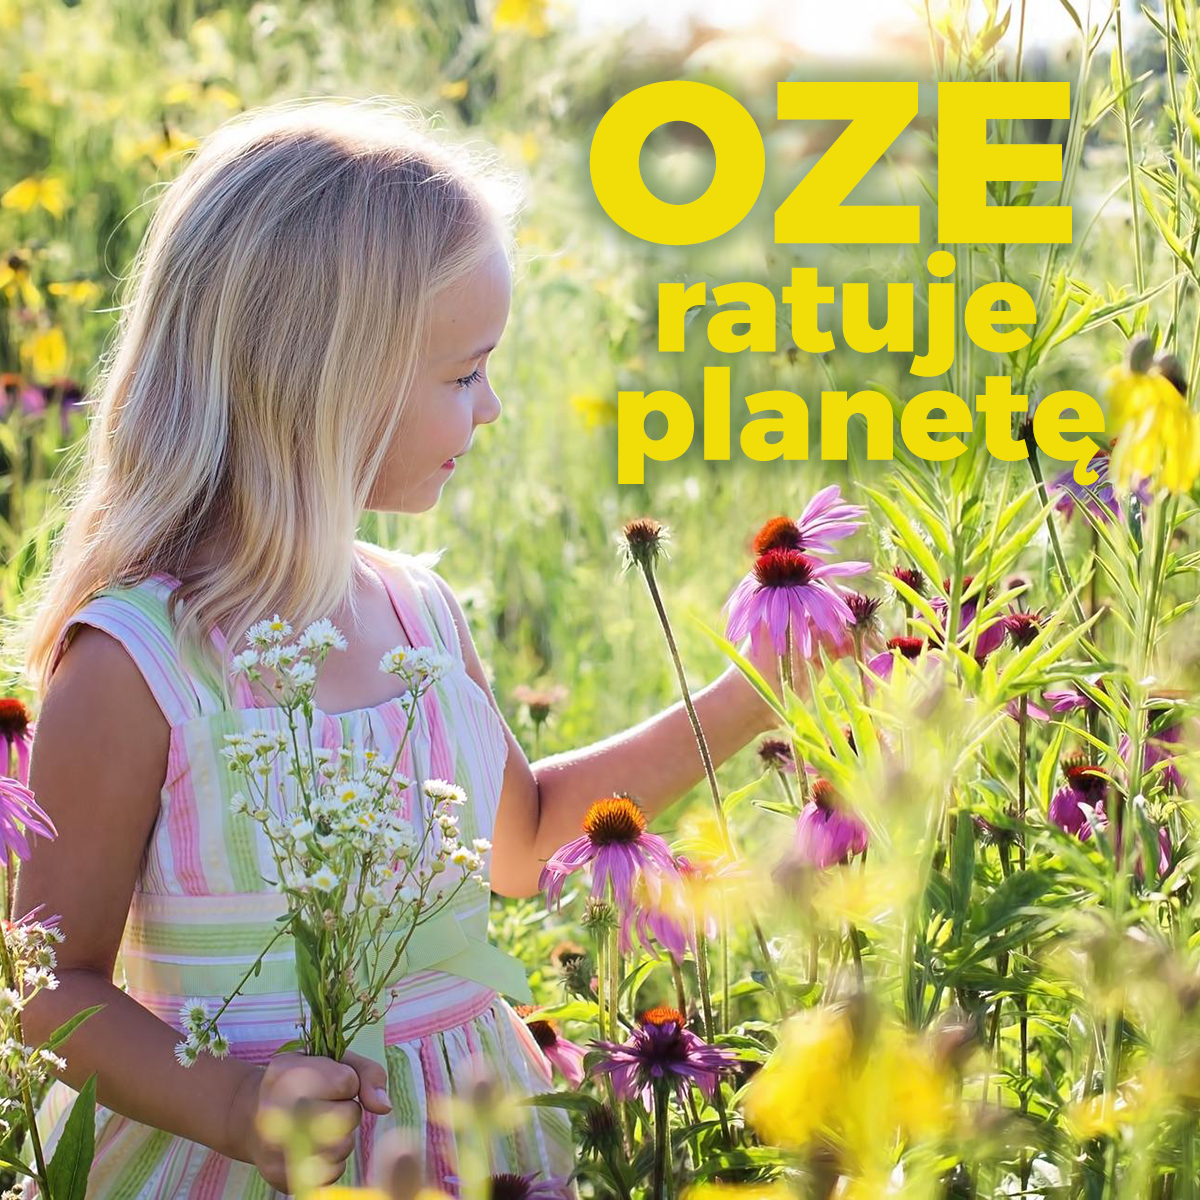 Rozstrzygnięcie konkursu „OZE ratuje planetę”!